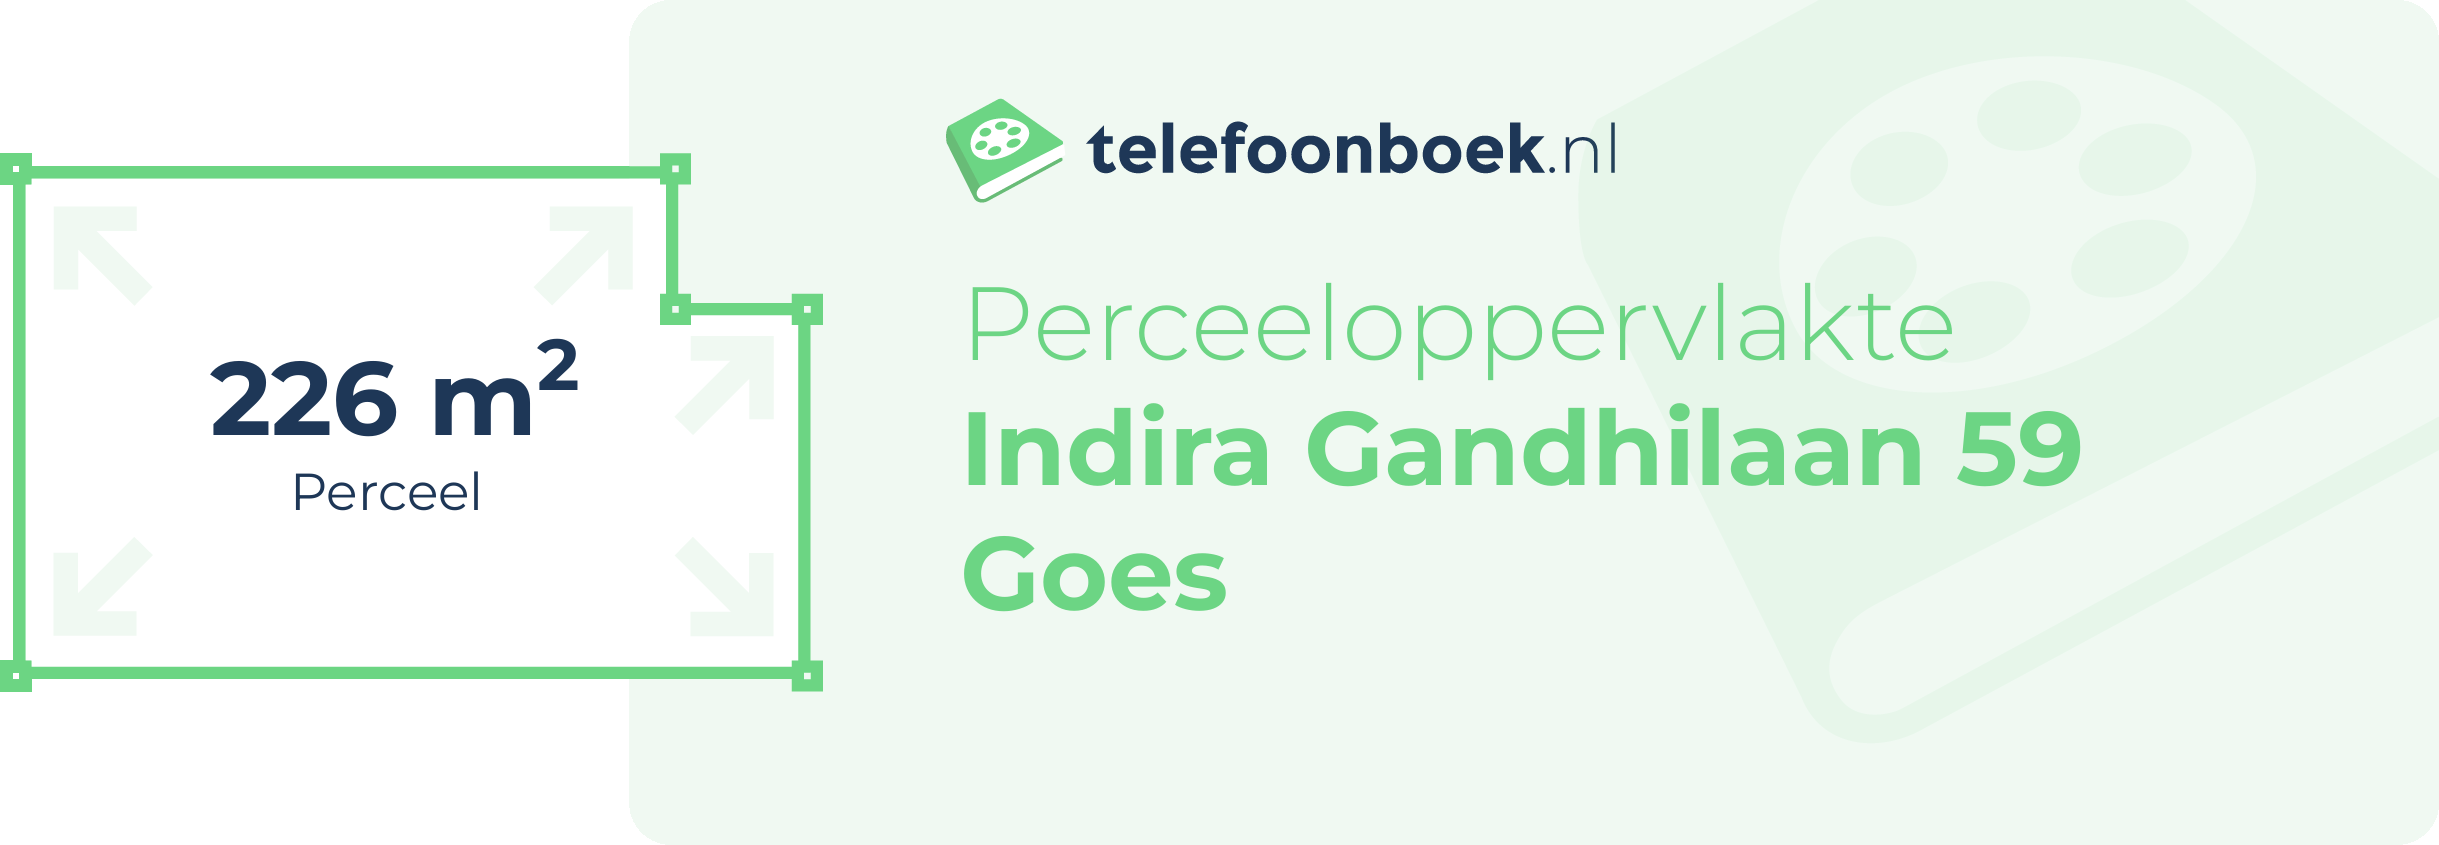 Perceeloppervlakte Indira Gandhilaan 59 Goes